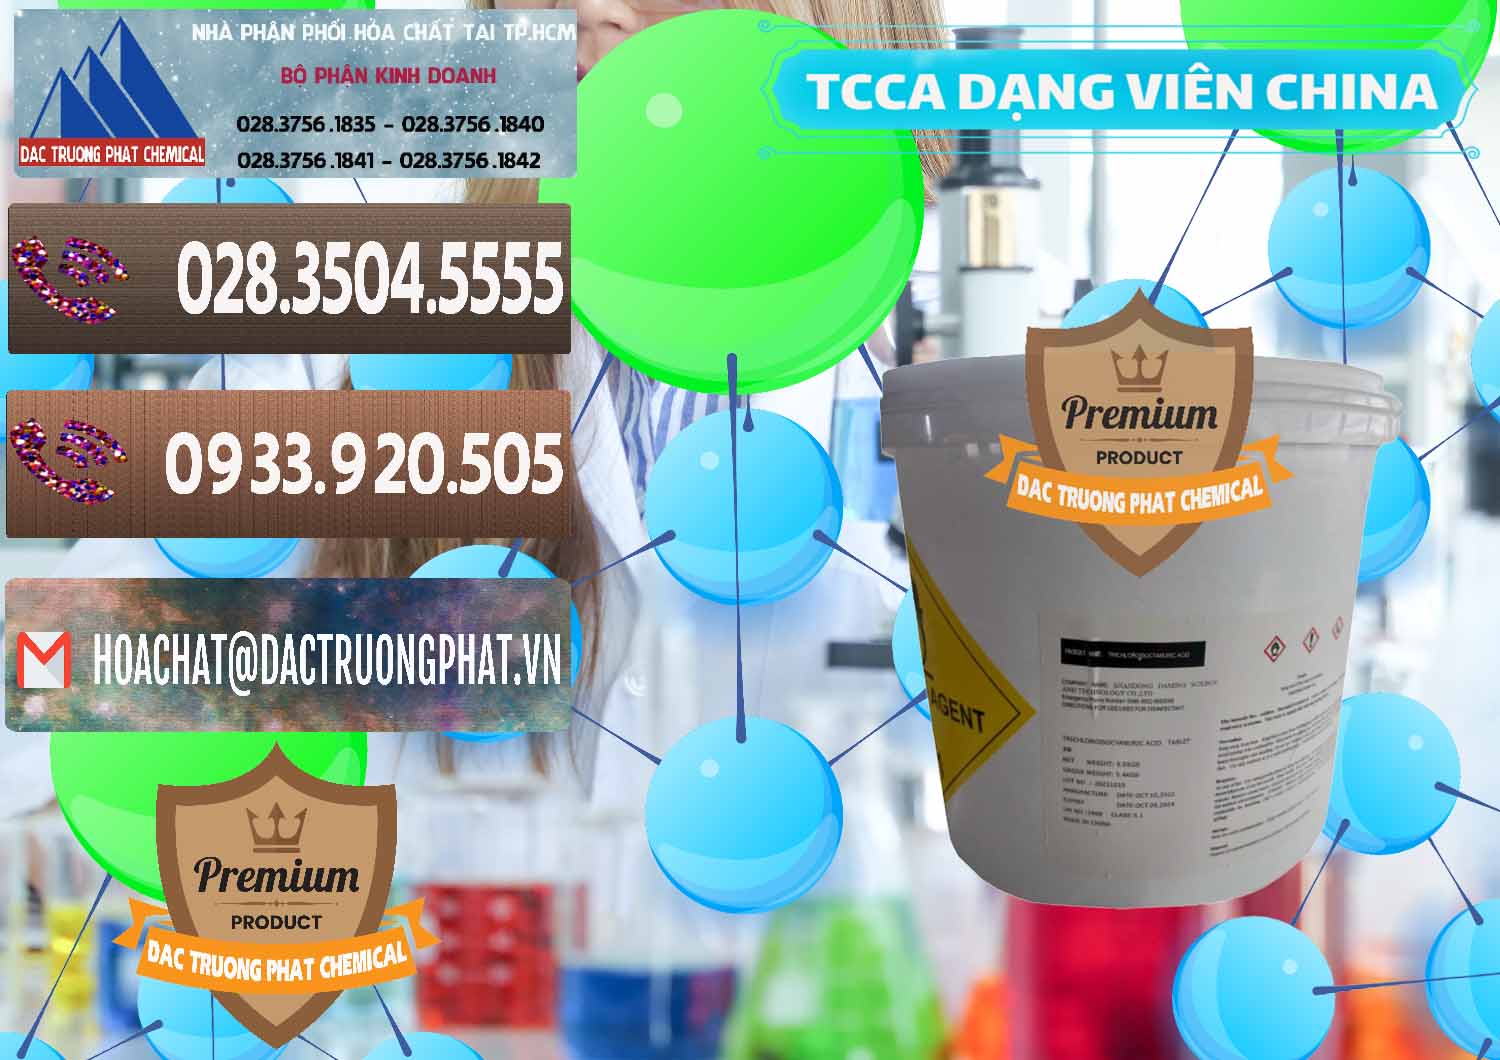 Đơn vị chuyên bán - phân phối TCCA - Acid Trichloroisocyanuric Dạng Viên Thùng 5kg Trung Quốc China - 0379 - Công ty chuyên bán & cung cấp hóa chất tại TP.HCM - hoachatviet.net